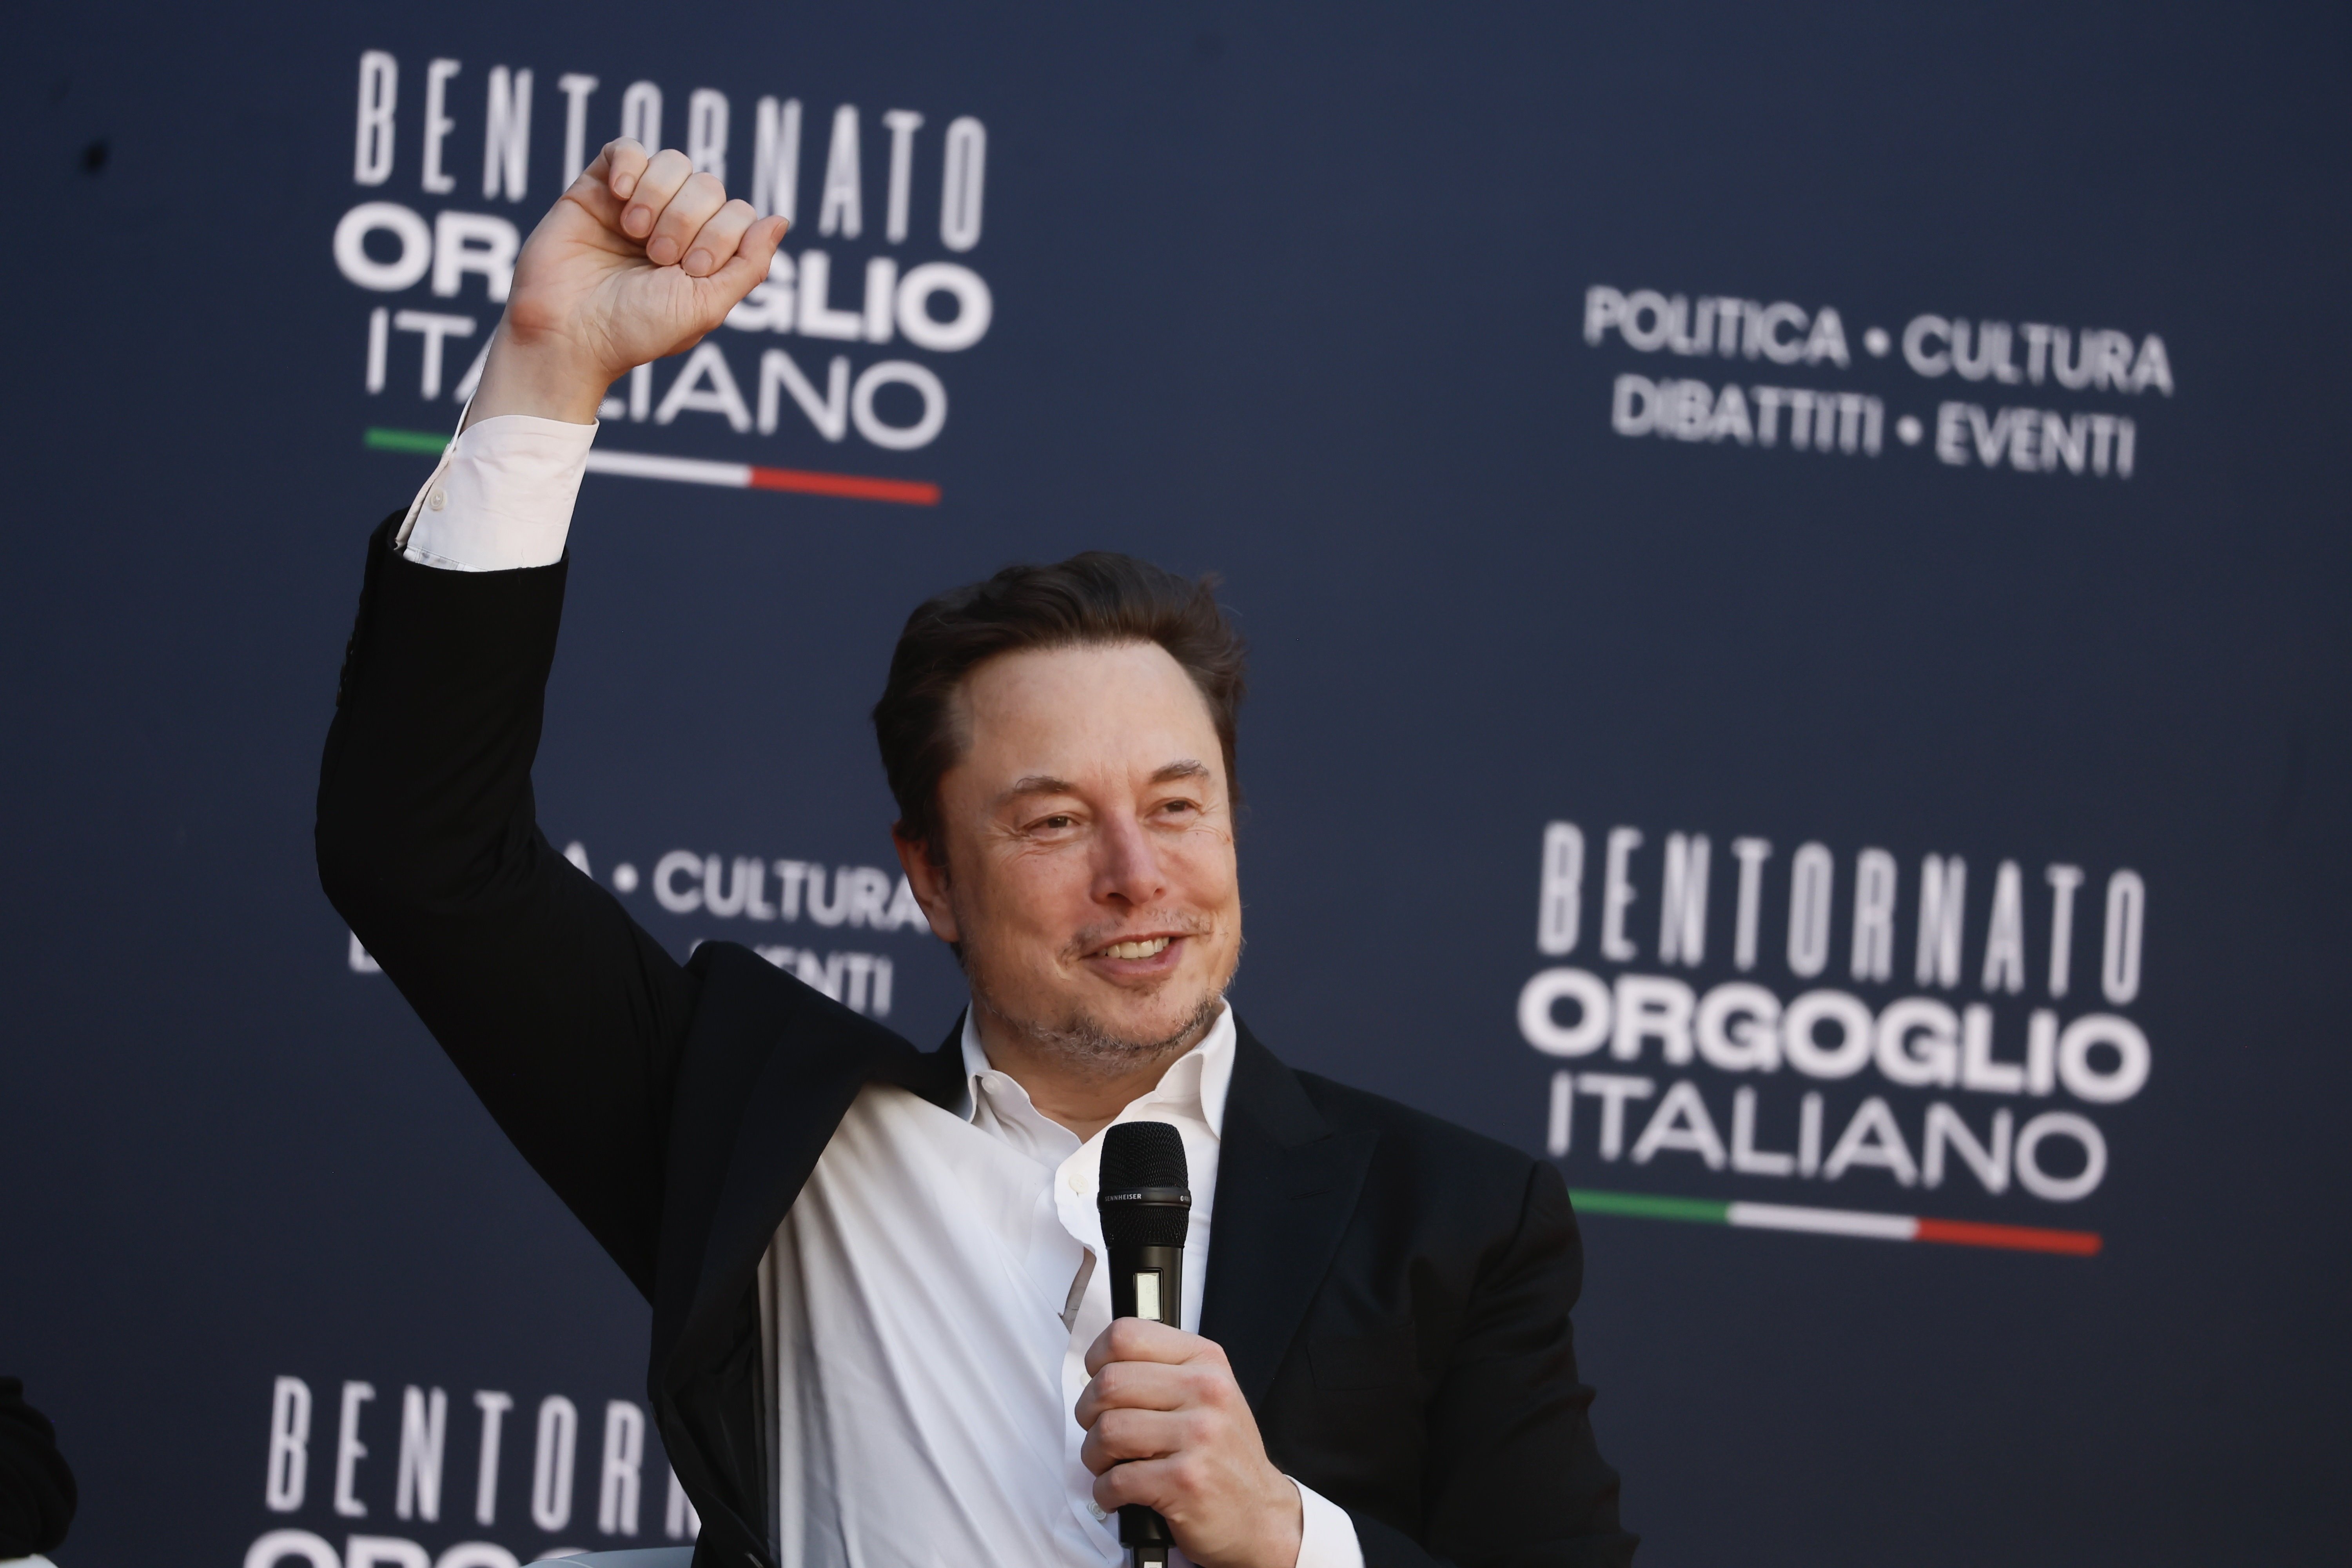 Males notícies per a Elon Musk, Brad Pitt no vol saber res de Tesla